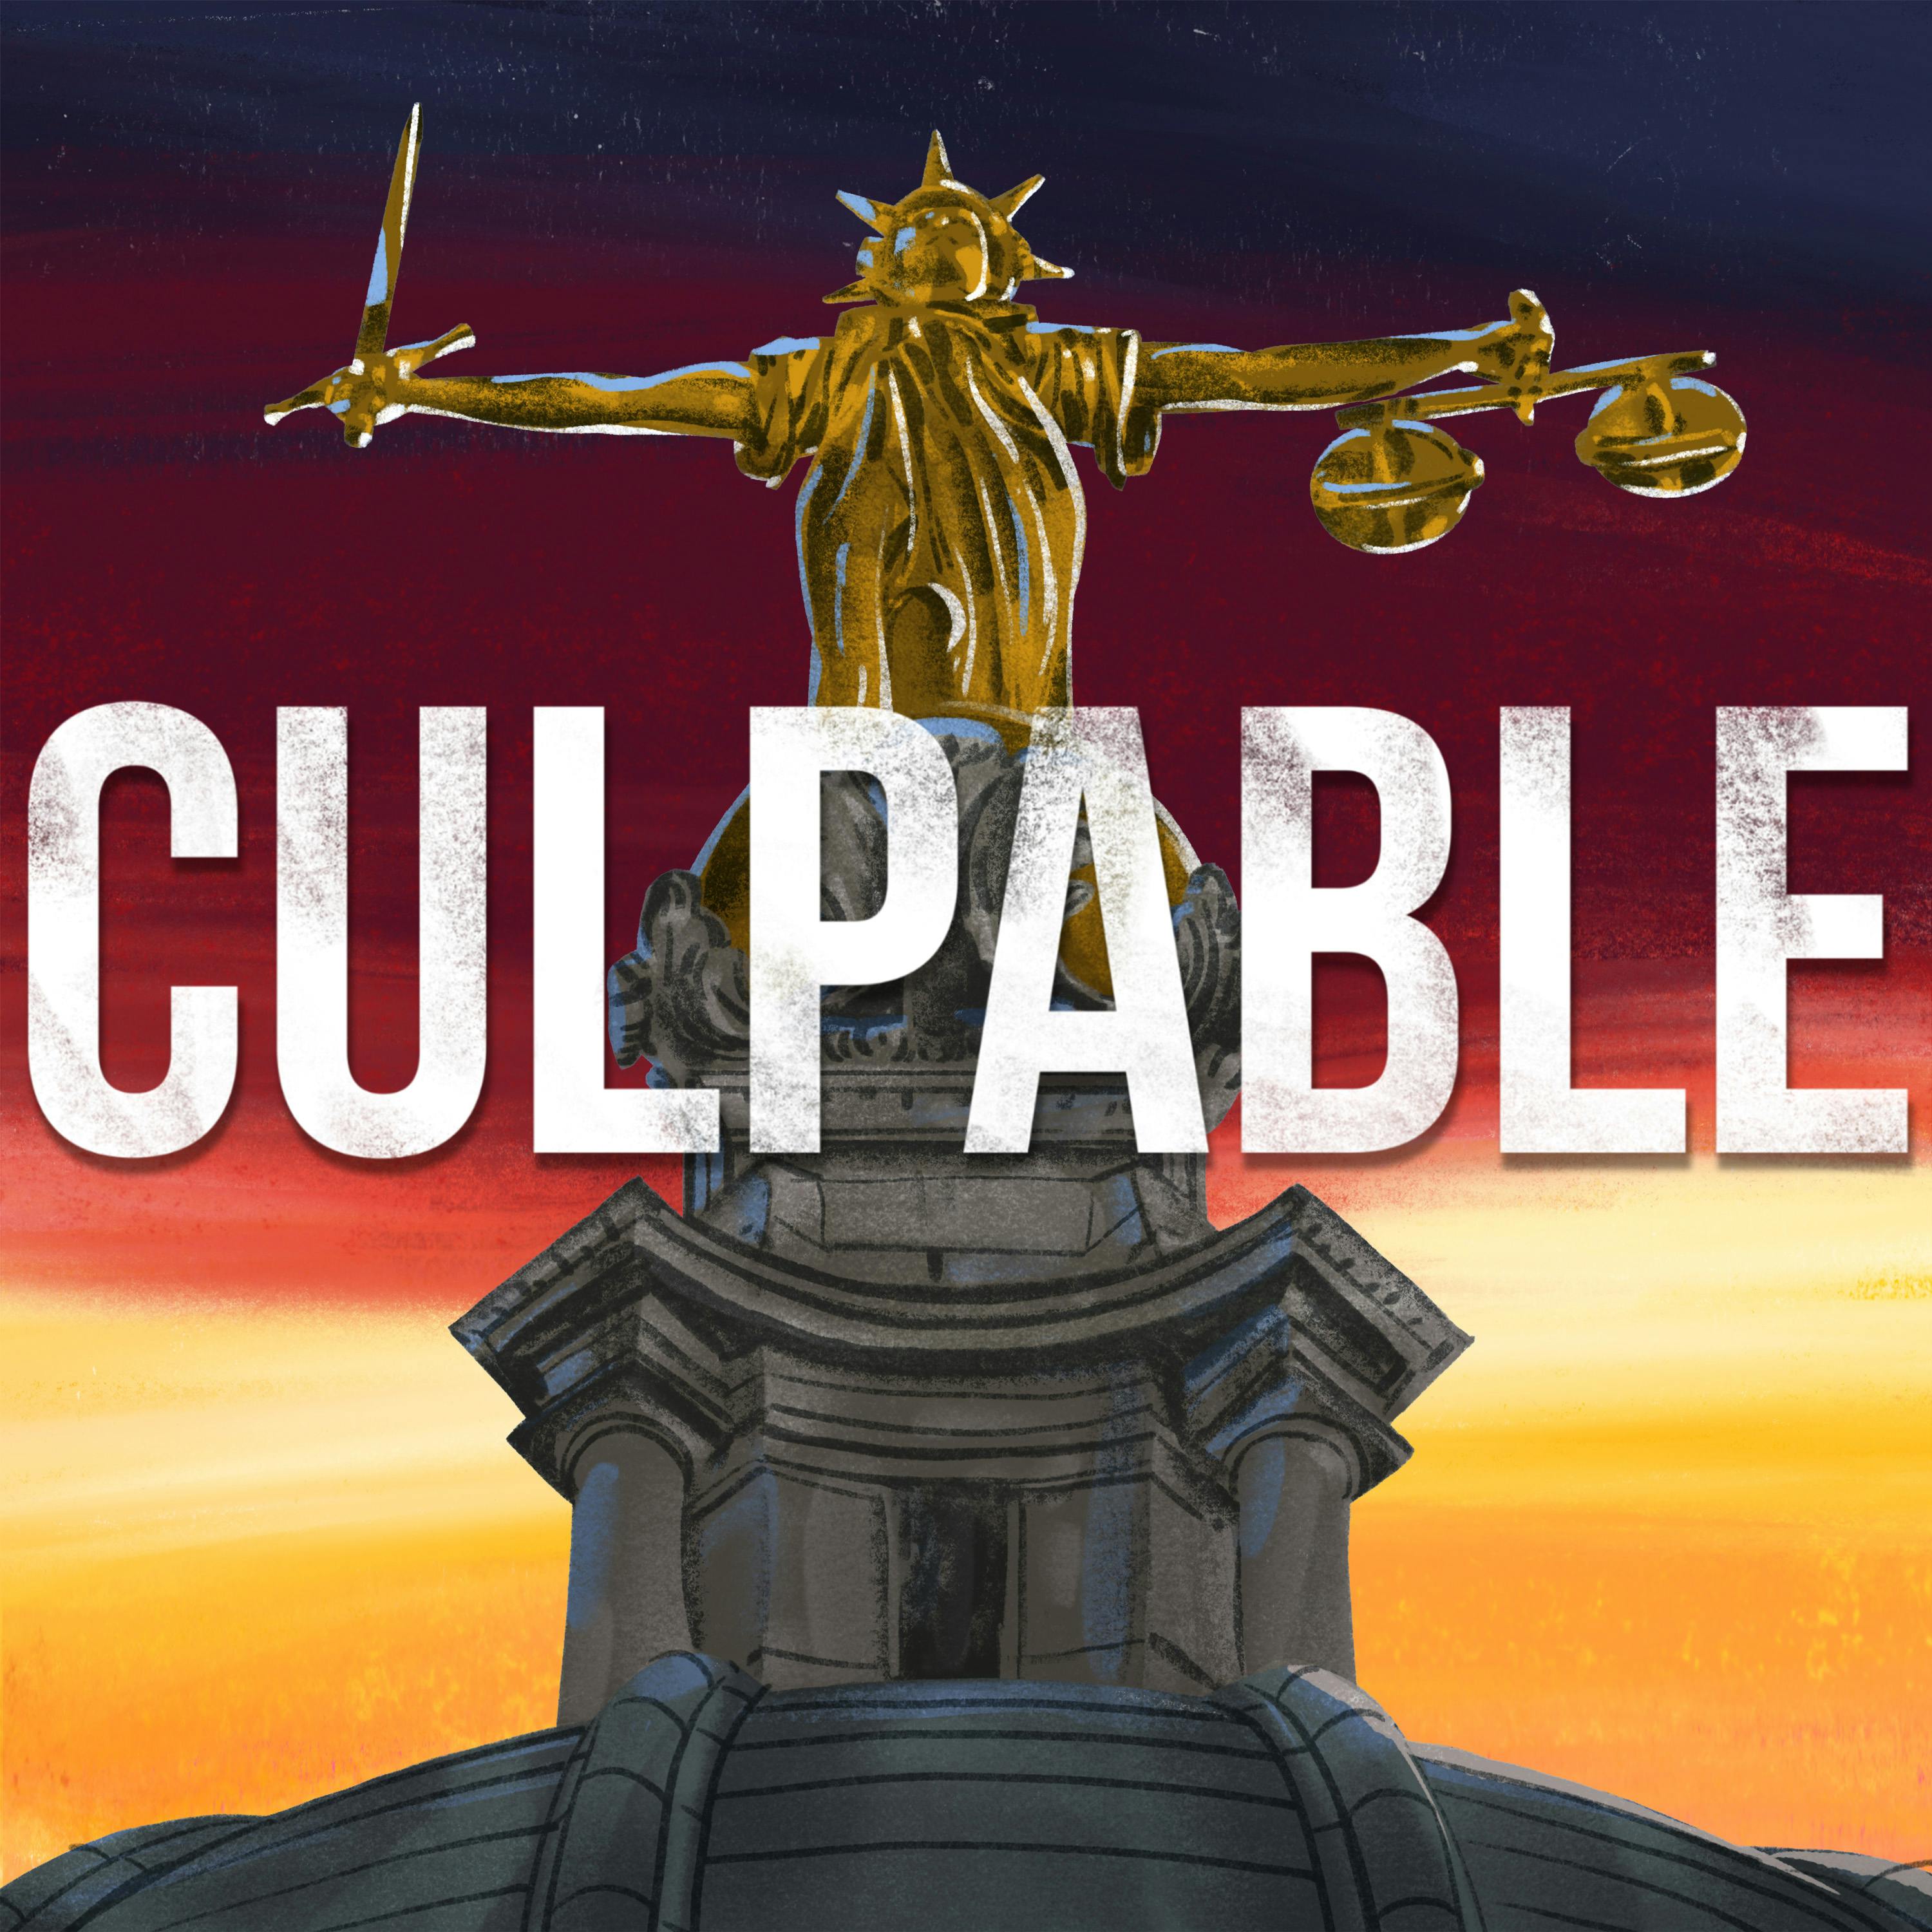 Culpable: Case Review Returns